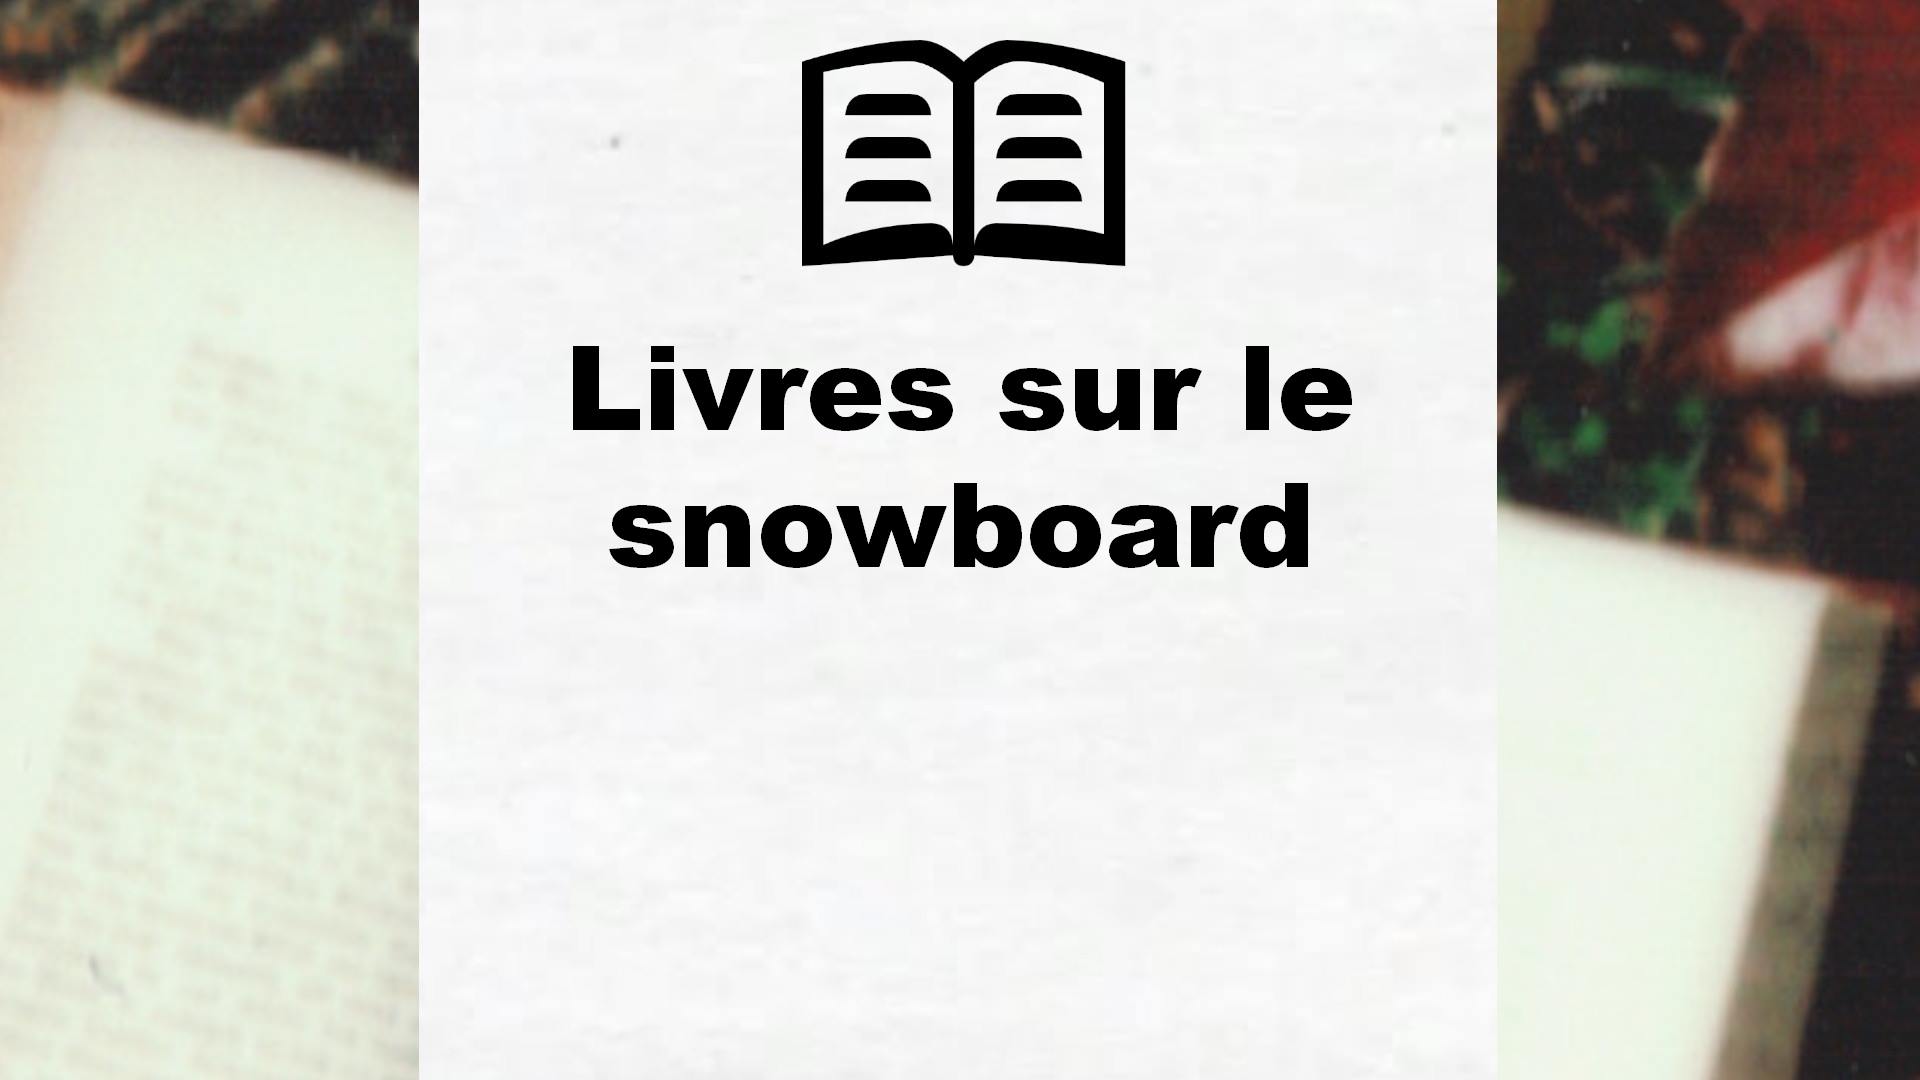 Livres sur le snowboard